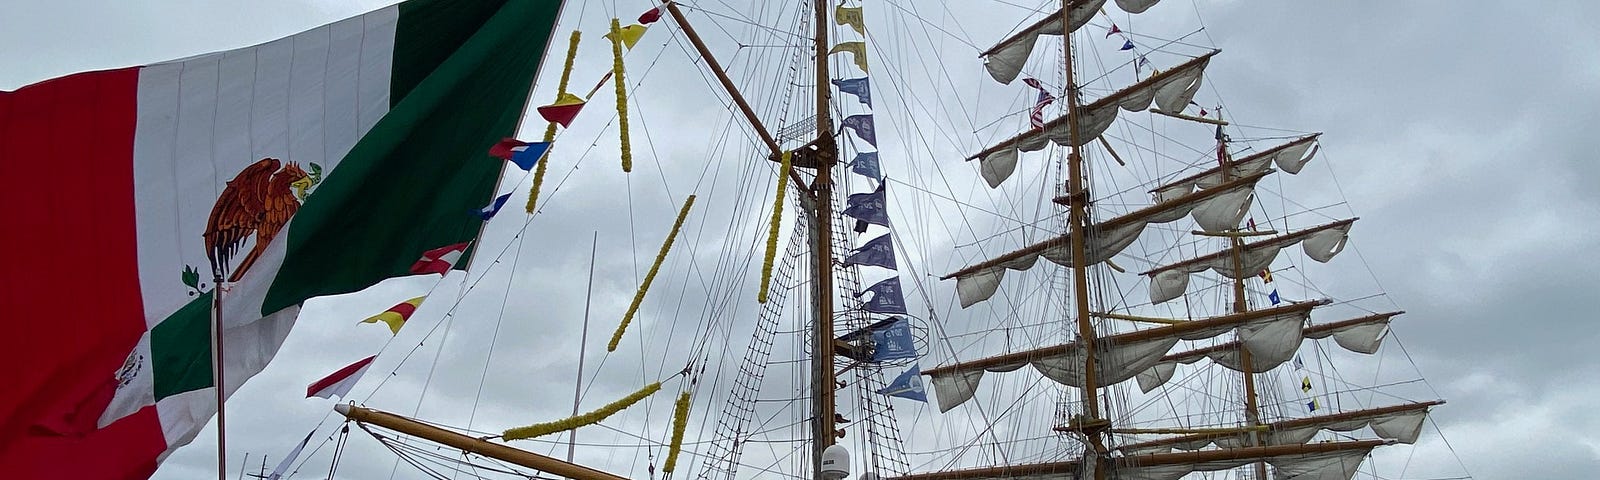 Tall Ship at pier.